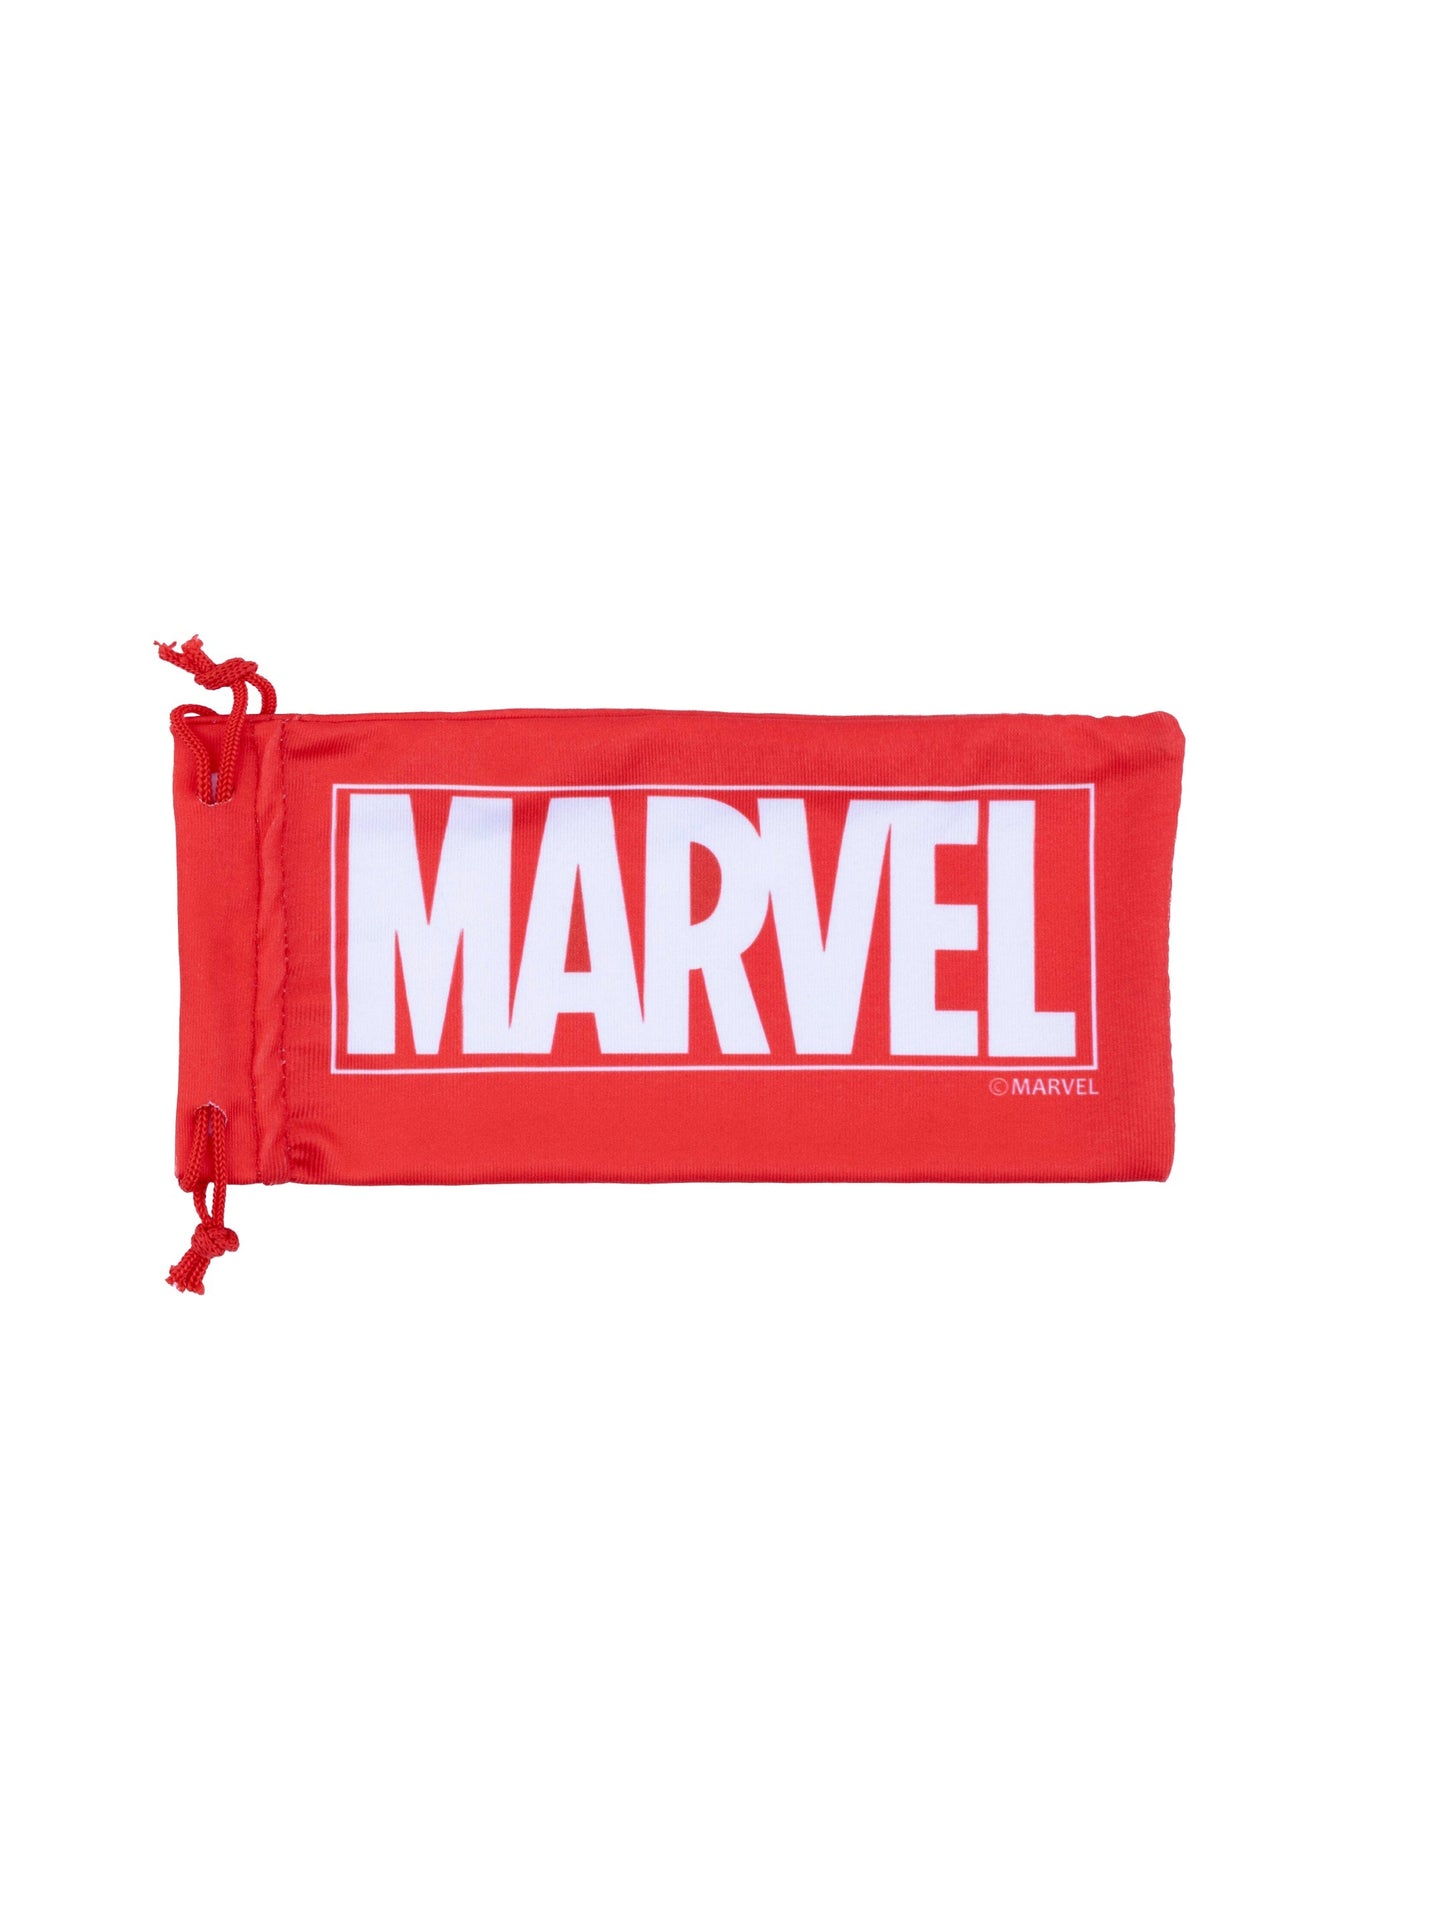 Marvel Avengers Sunglasses - Toys4All.in